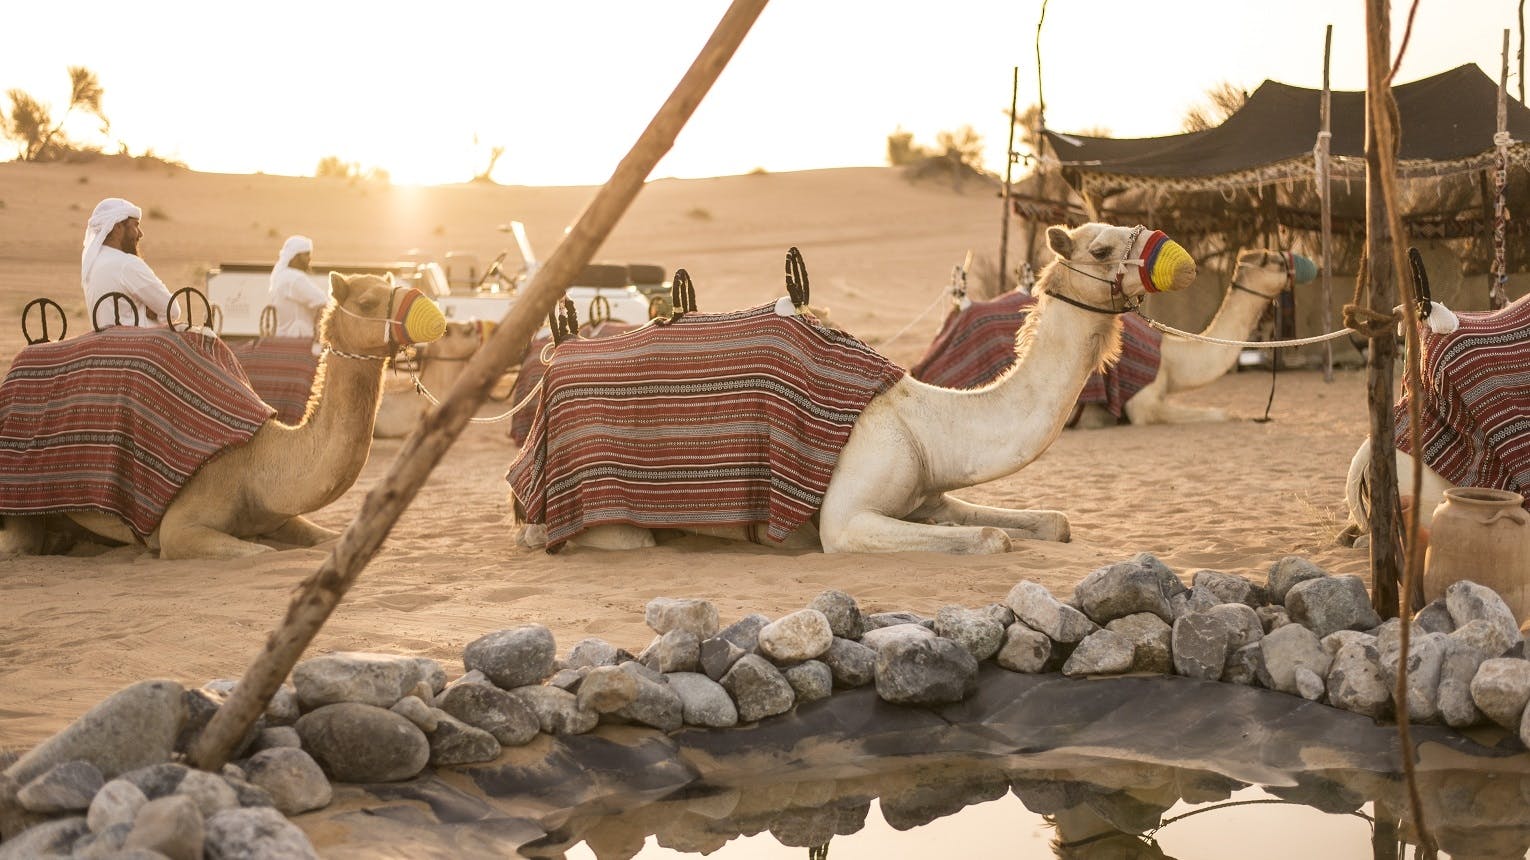 Safari culturale beduino da Dubai